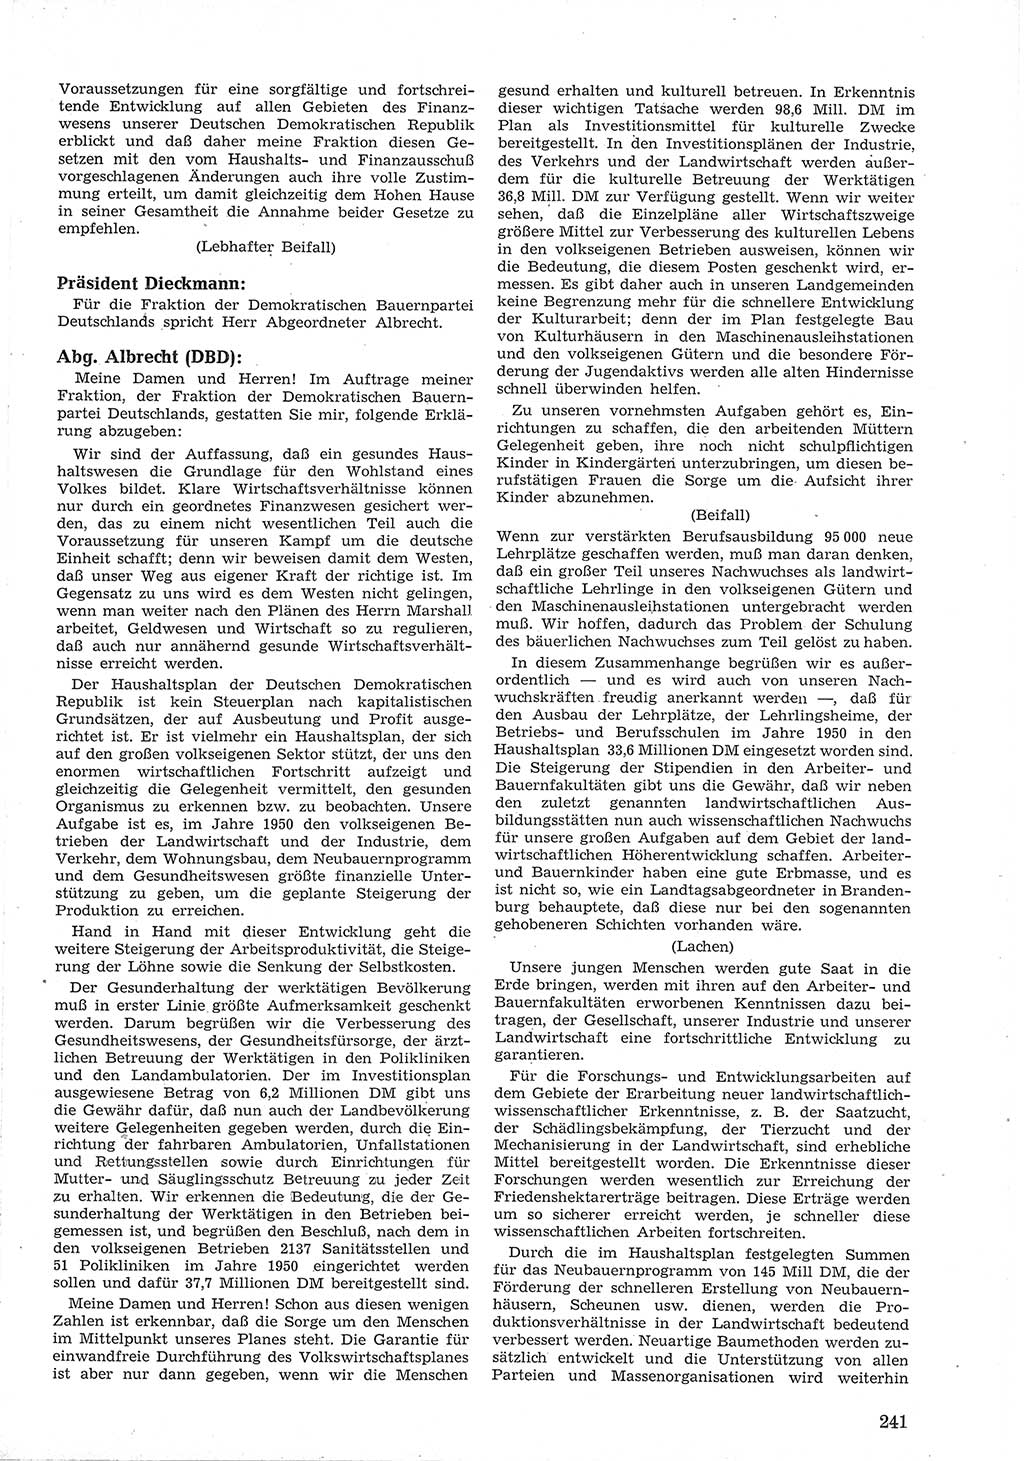 Provisorische Volkskammer (VK) der Deutschen Demokratischen Republik (DDR) 1949-1950, Dokument 255 (Prov. VK DDR 1949-1950, Dok. 255)